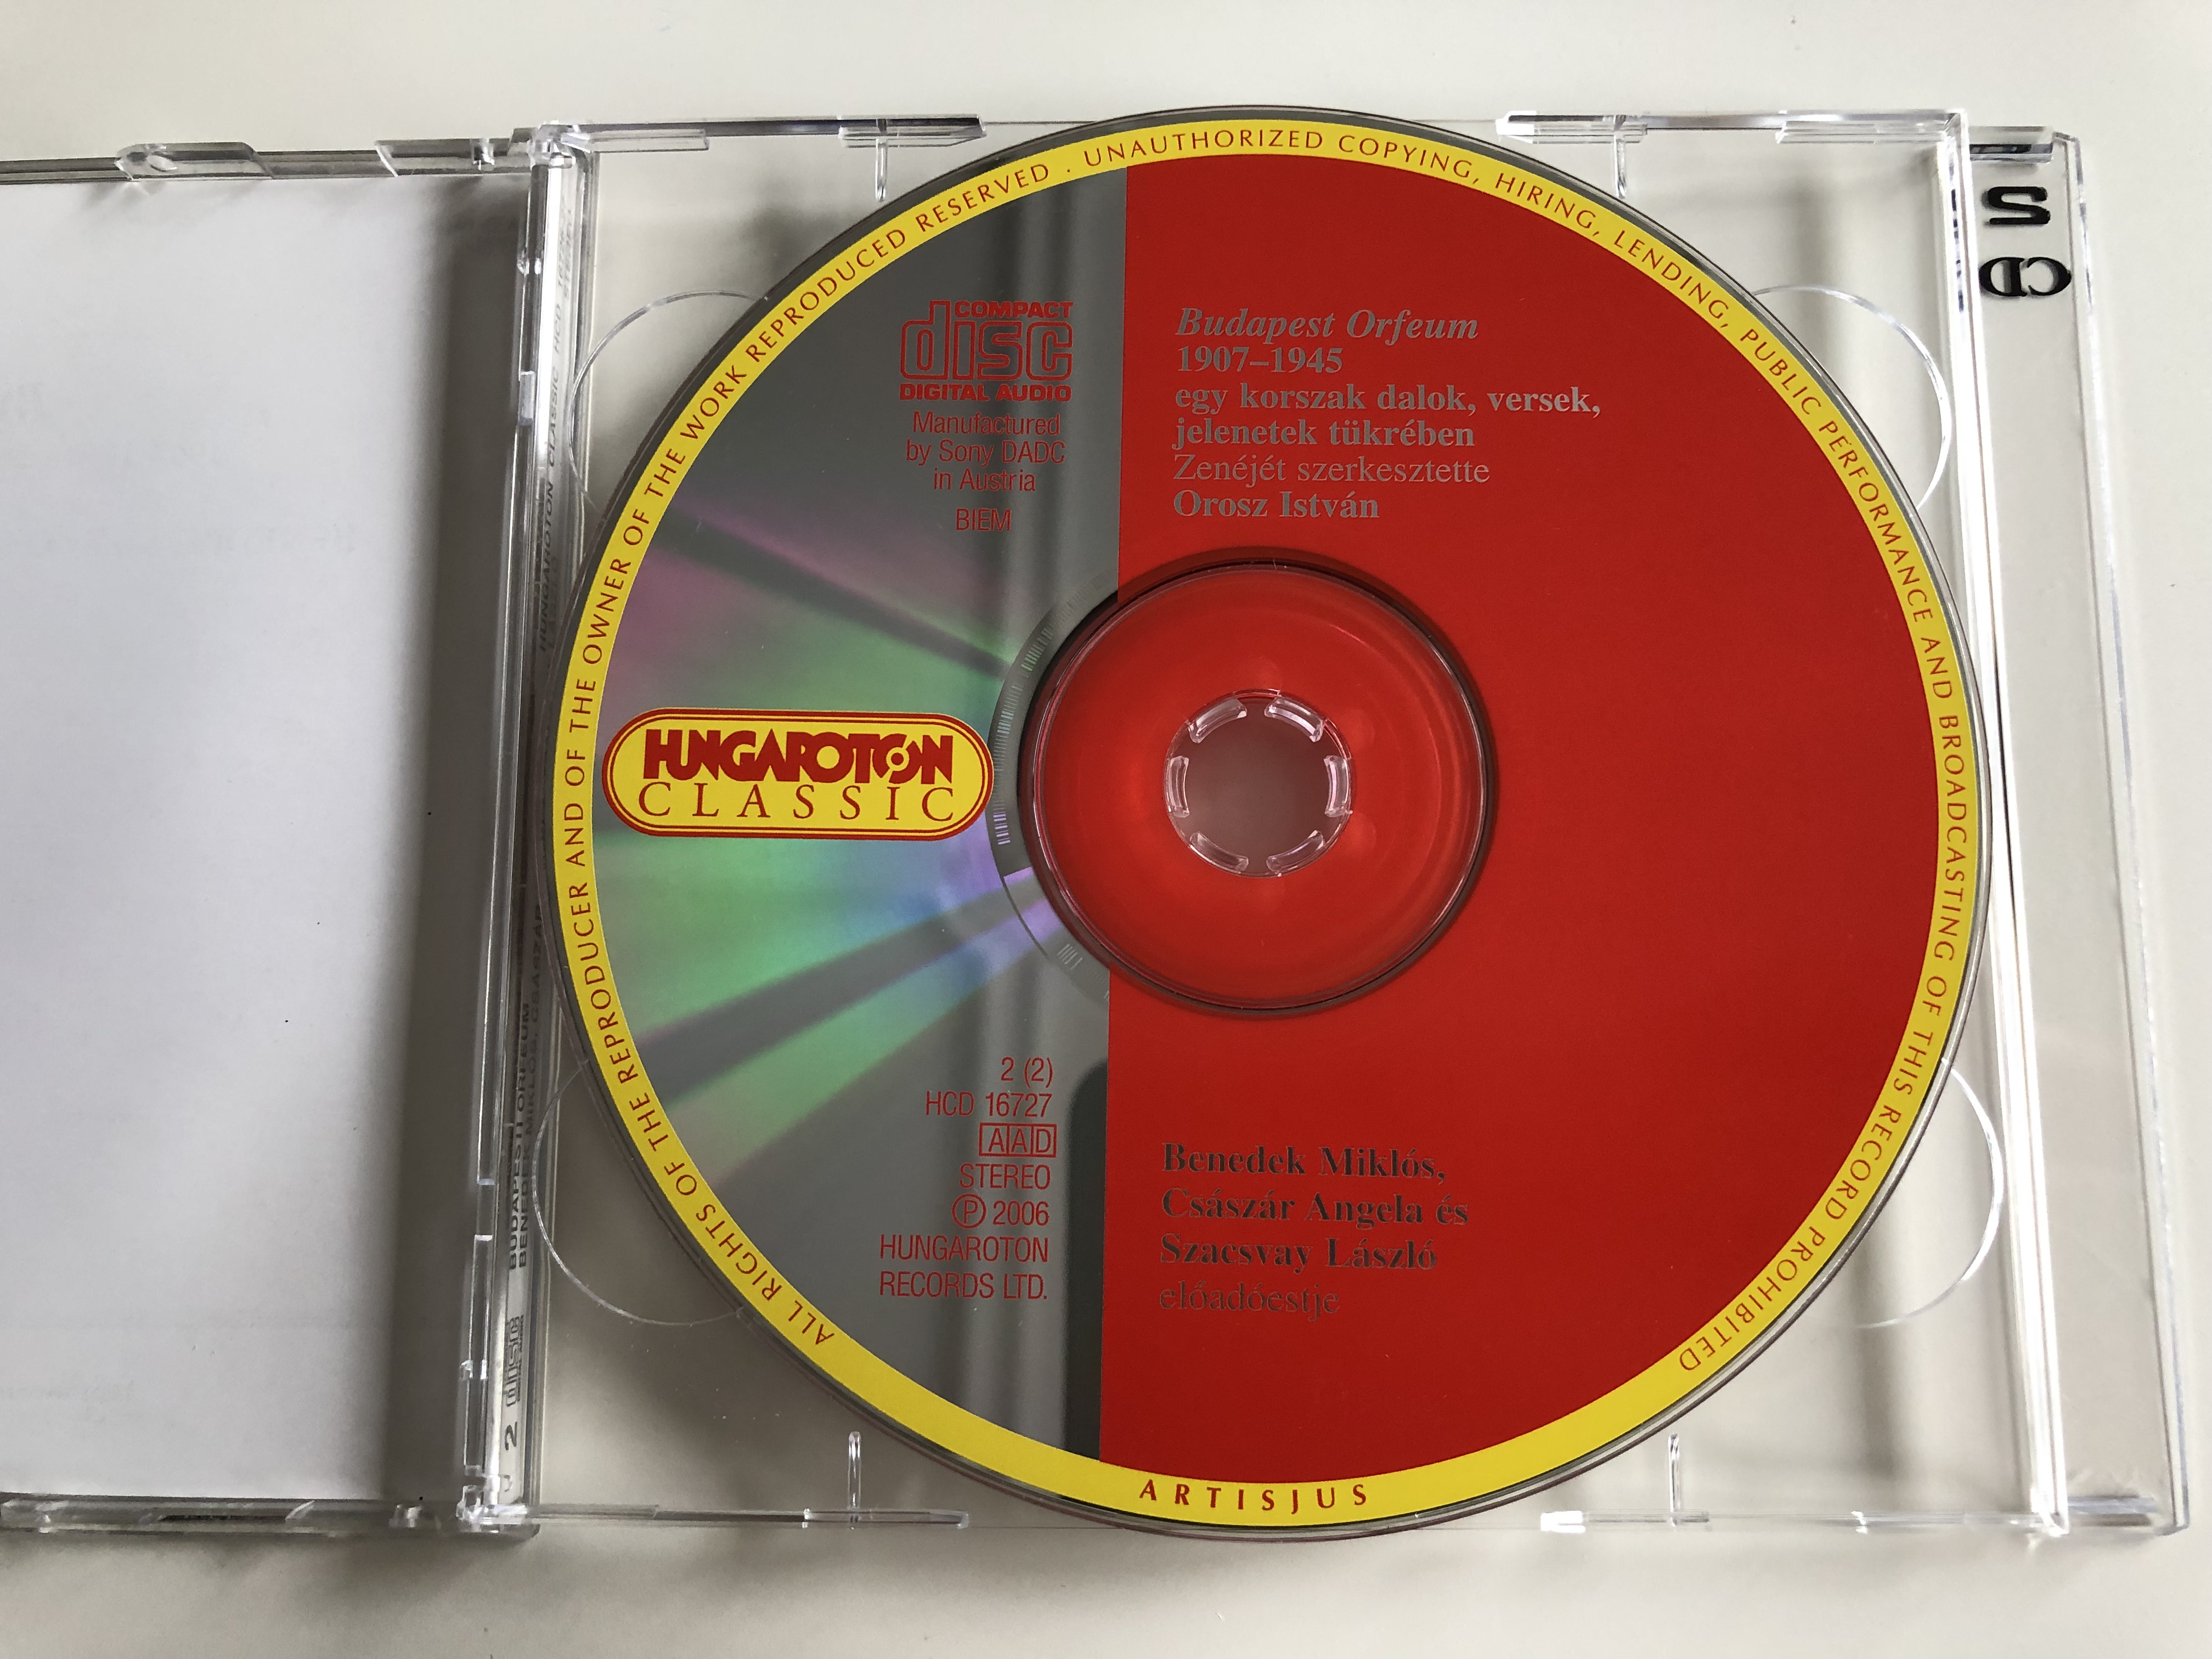 budapest-orfeum-szacsvay-l-szl-cs-sz-r-ang-la-benedek-mikl-s-hungaroton-classic-audio-cd-2006-hcd-16726-27-7-.jpg